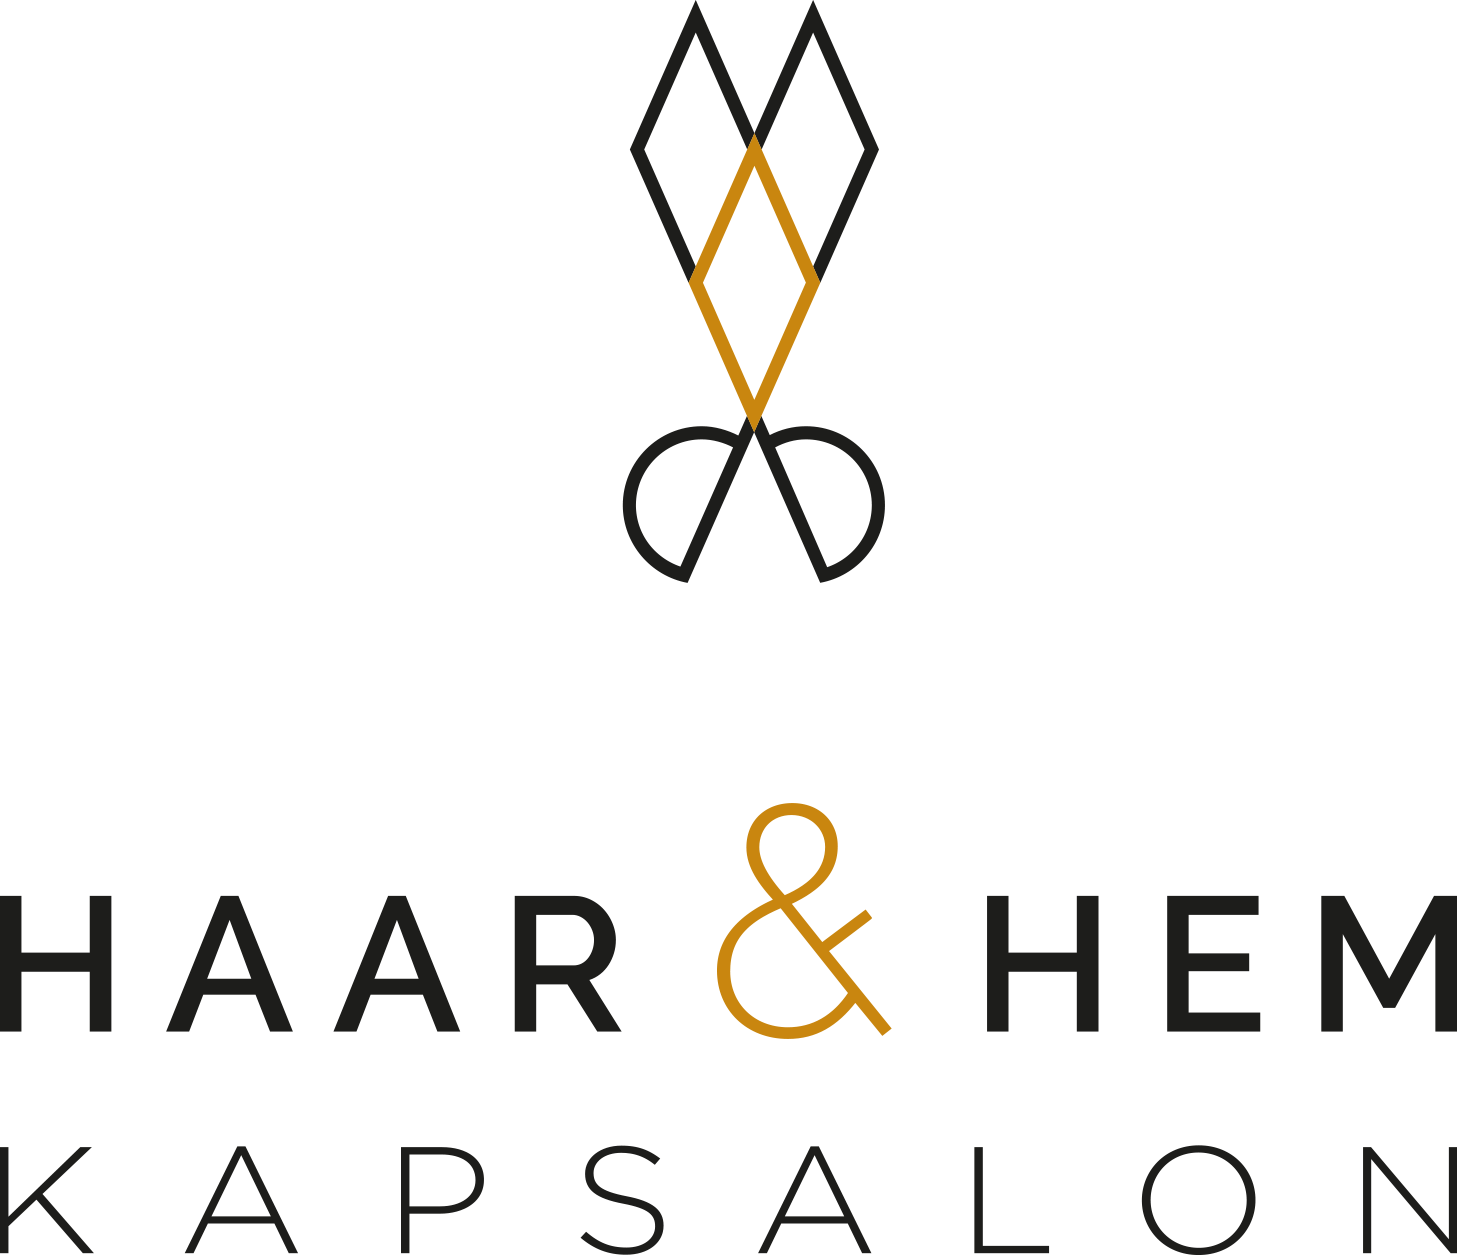 Haar & Hem Logo